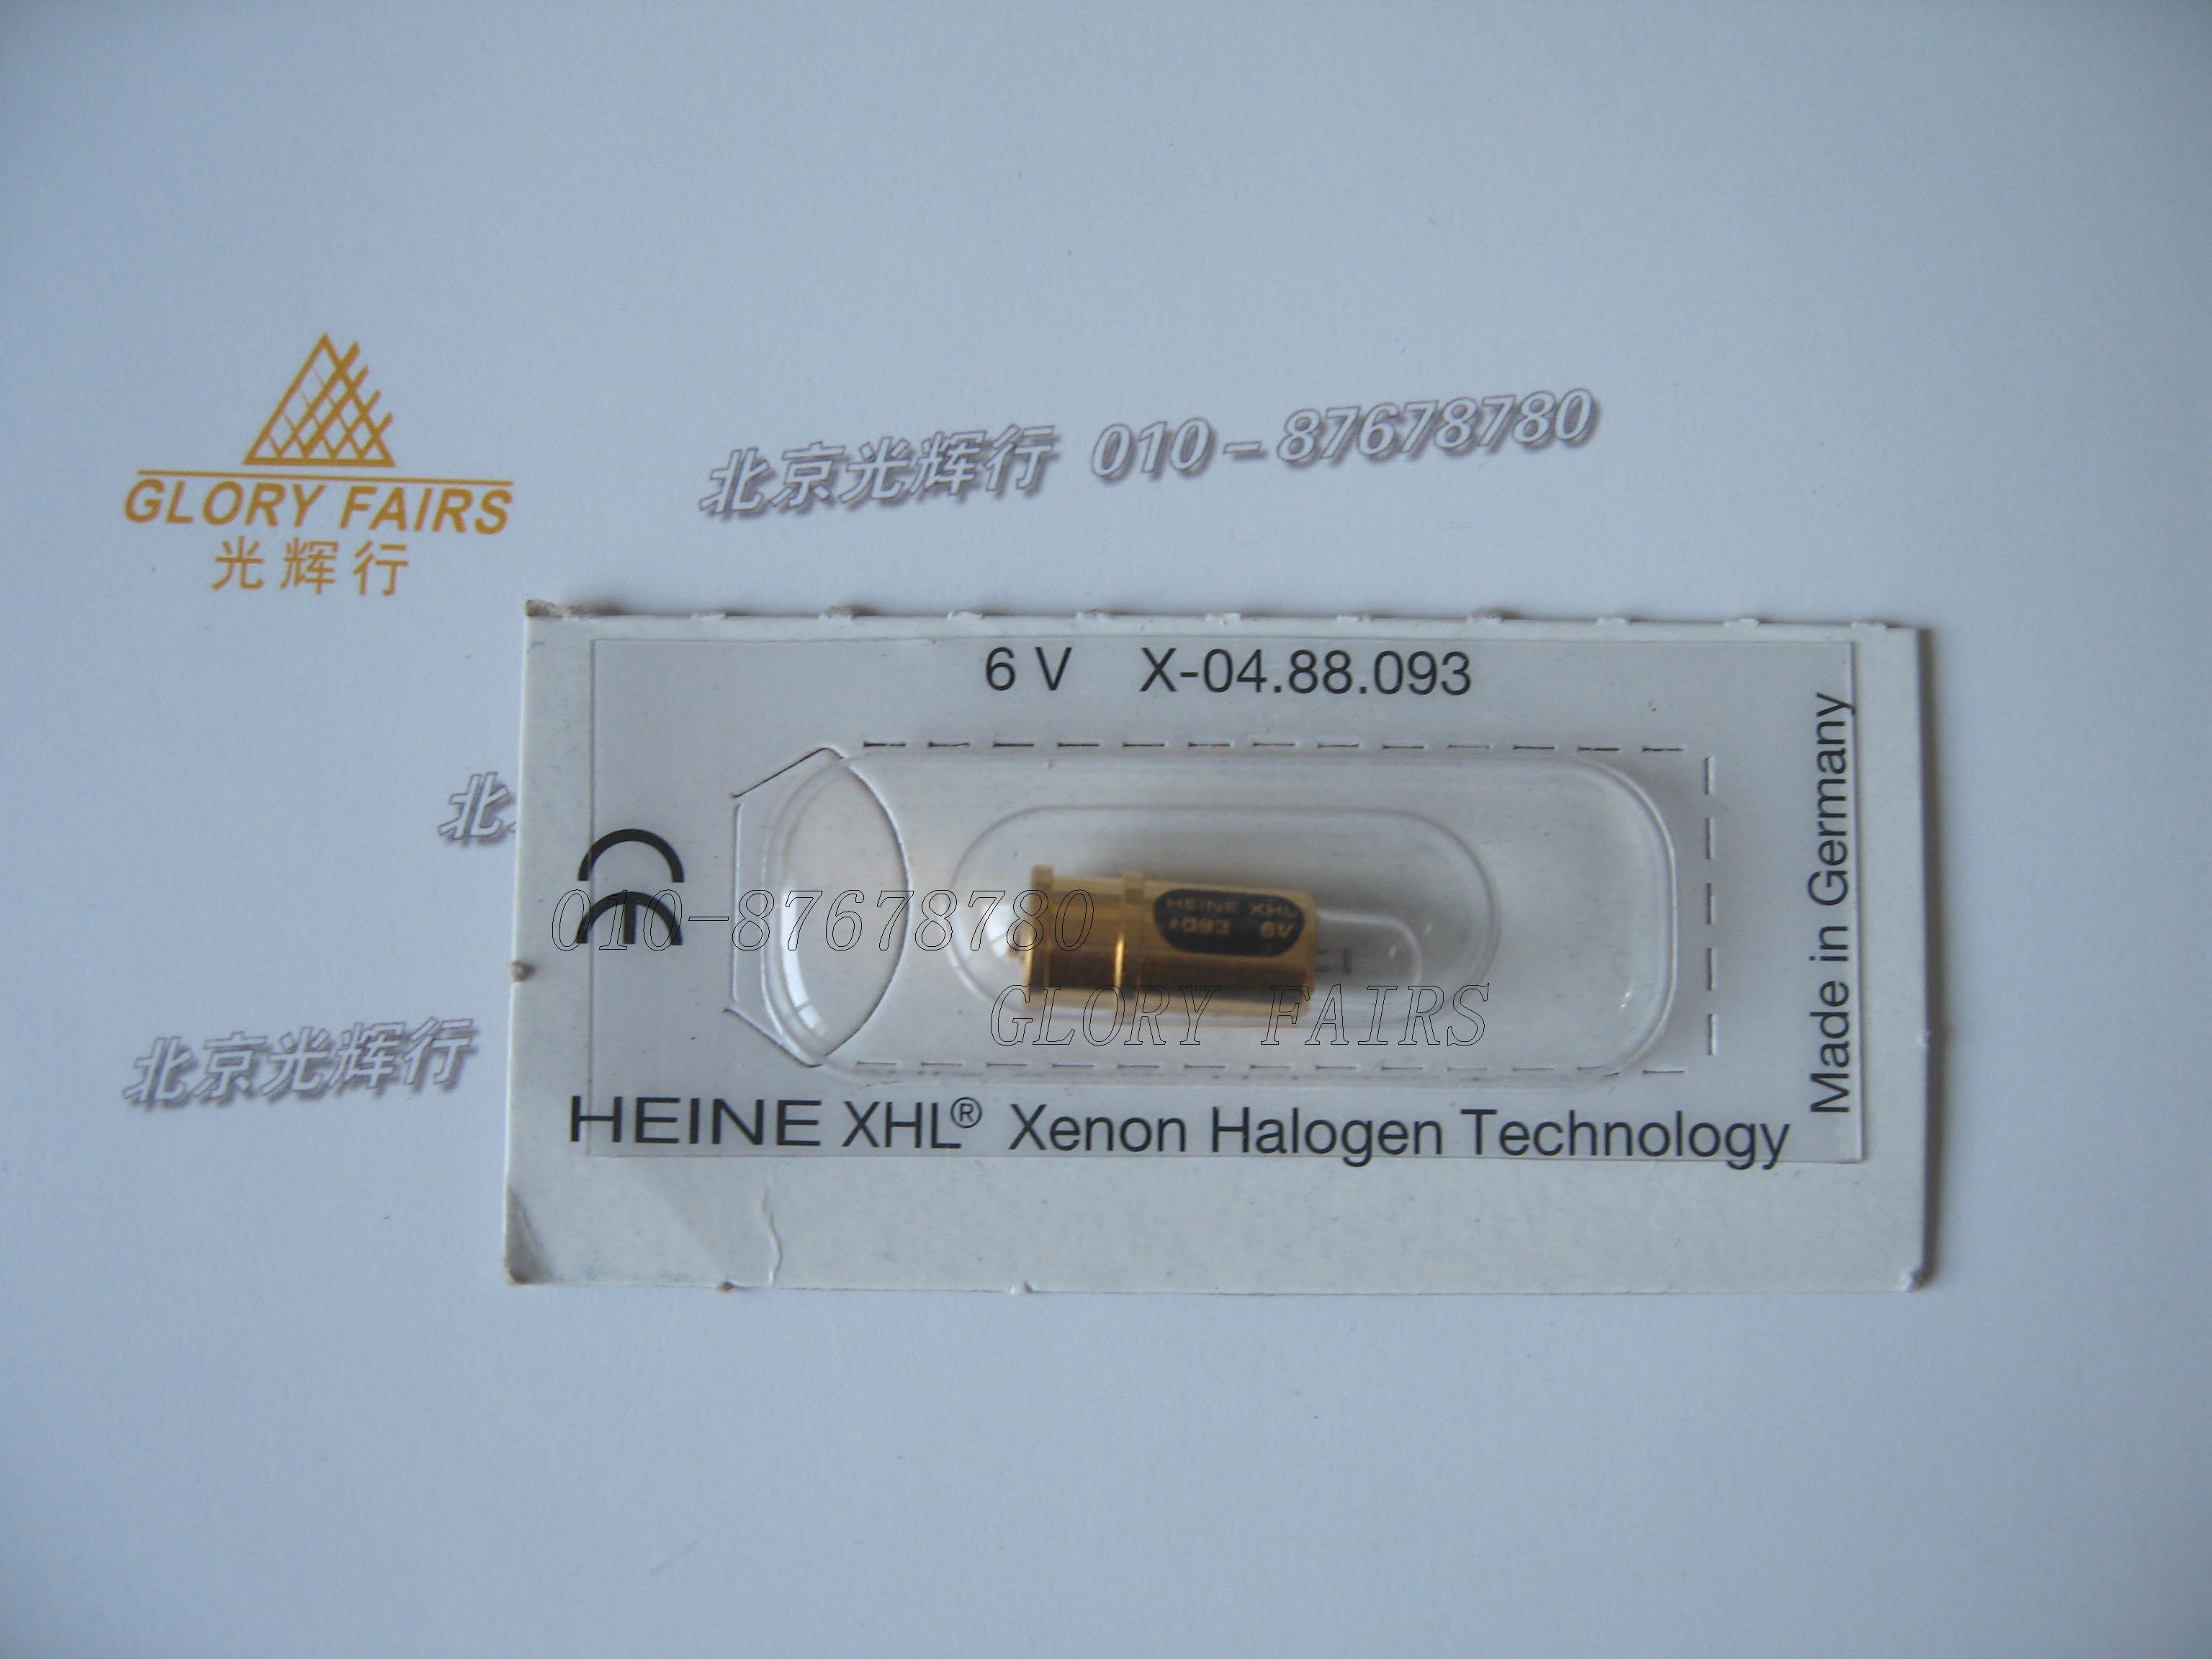 Heine XHL 093 6V 램프, Sigma150 M2, 시그마 150K 간접 검안경, X-004.88.093 전구, 이전 X-04.88.093